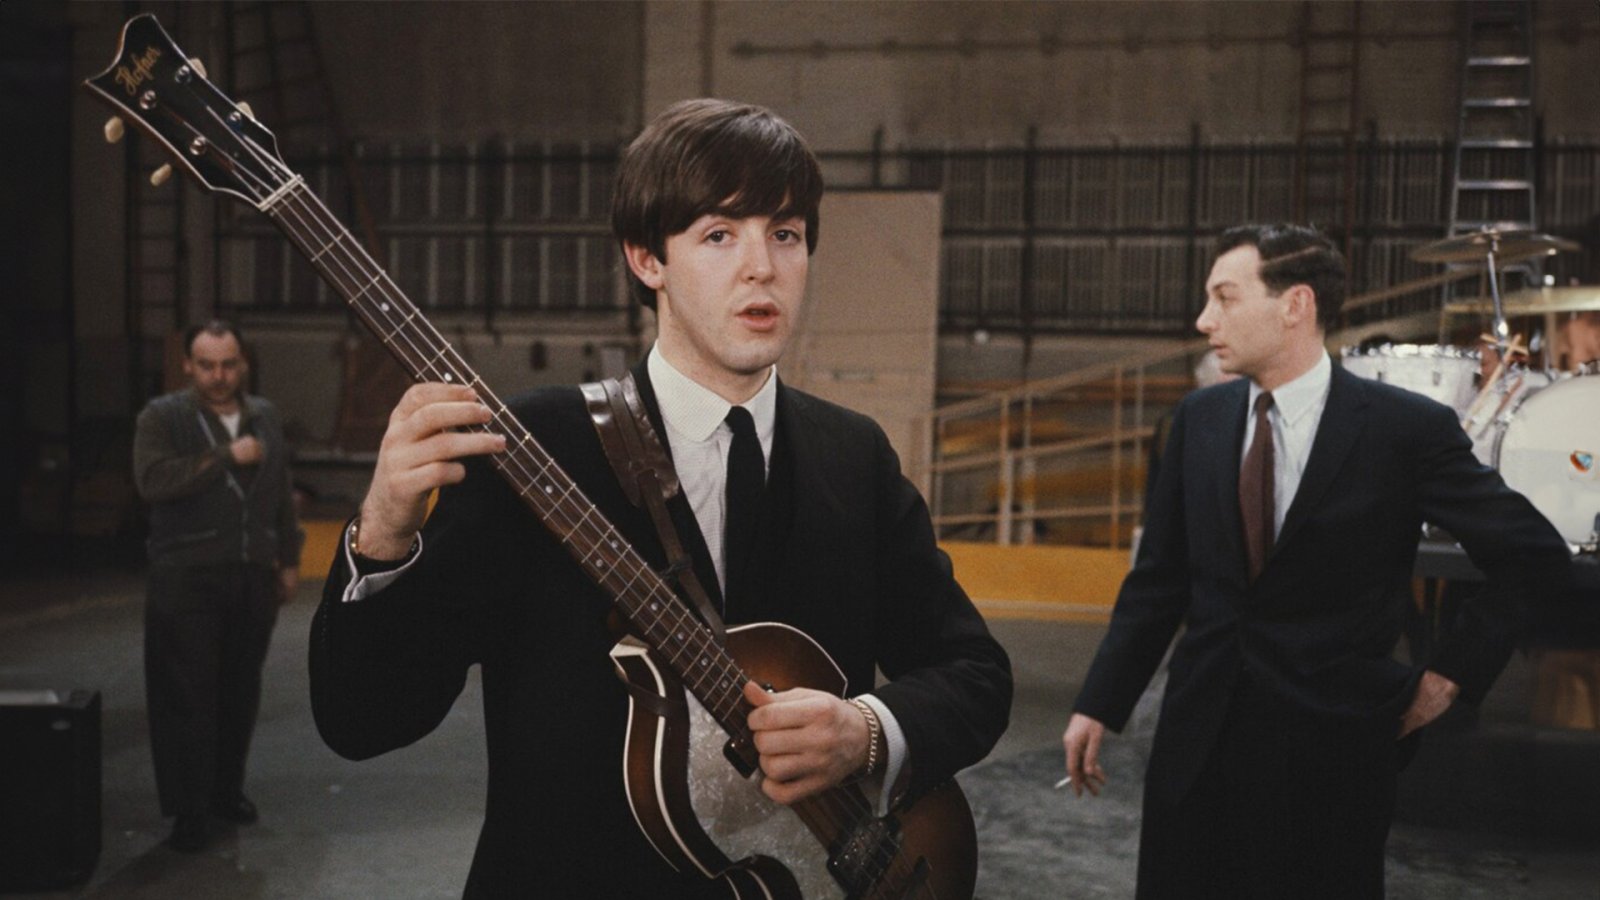 พบกีตาร์เบสในตำนานของ Paul McCartney แห่งวง The Beatles ที่สูญหายกว่าครึ่งทศวรรษแล้ว!